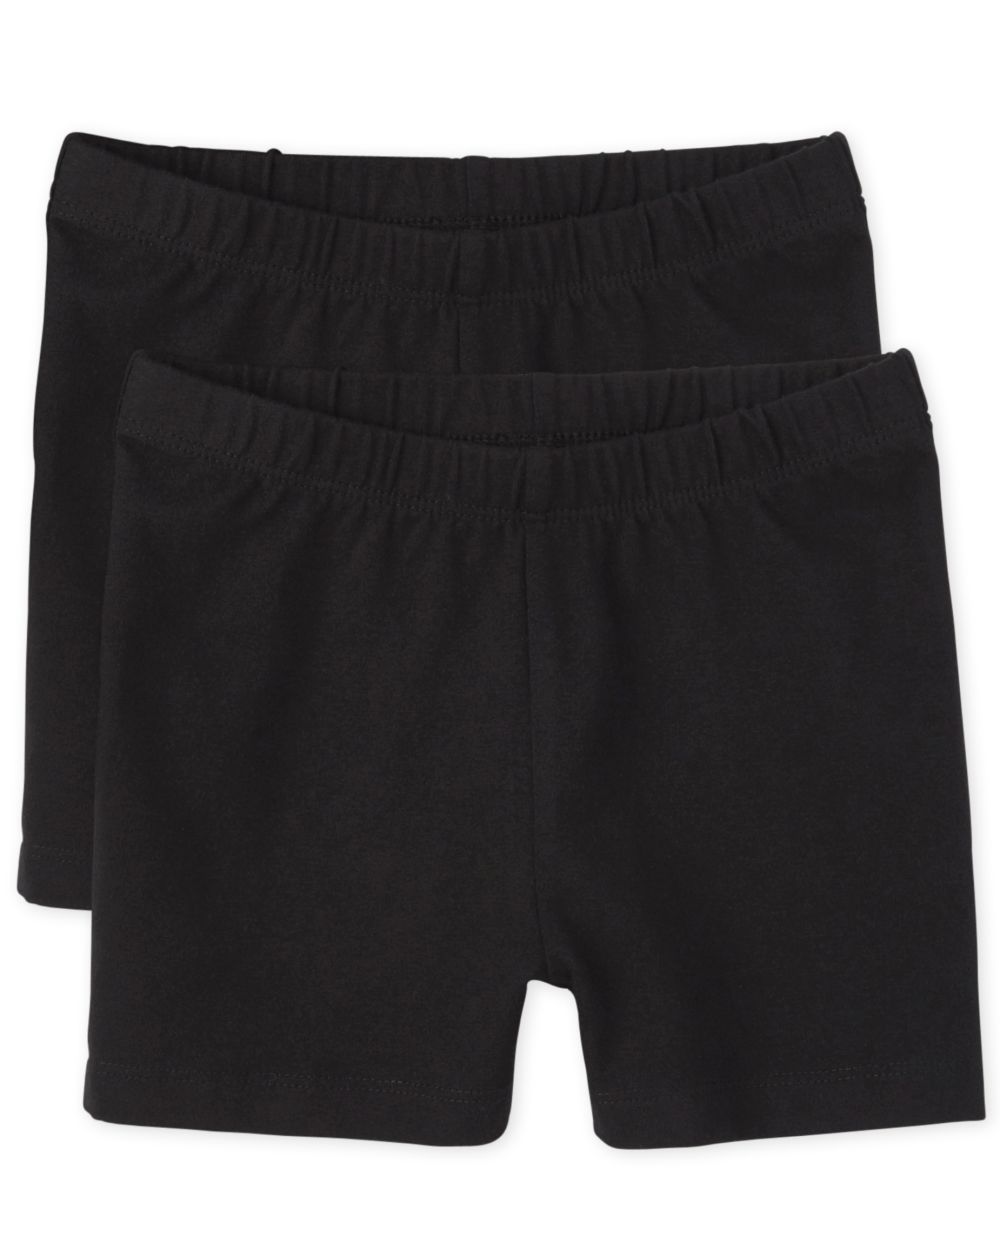 Girls Knit Cartwheel Shorts 2-Pack